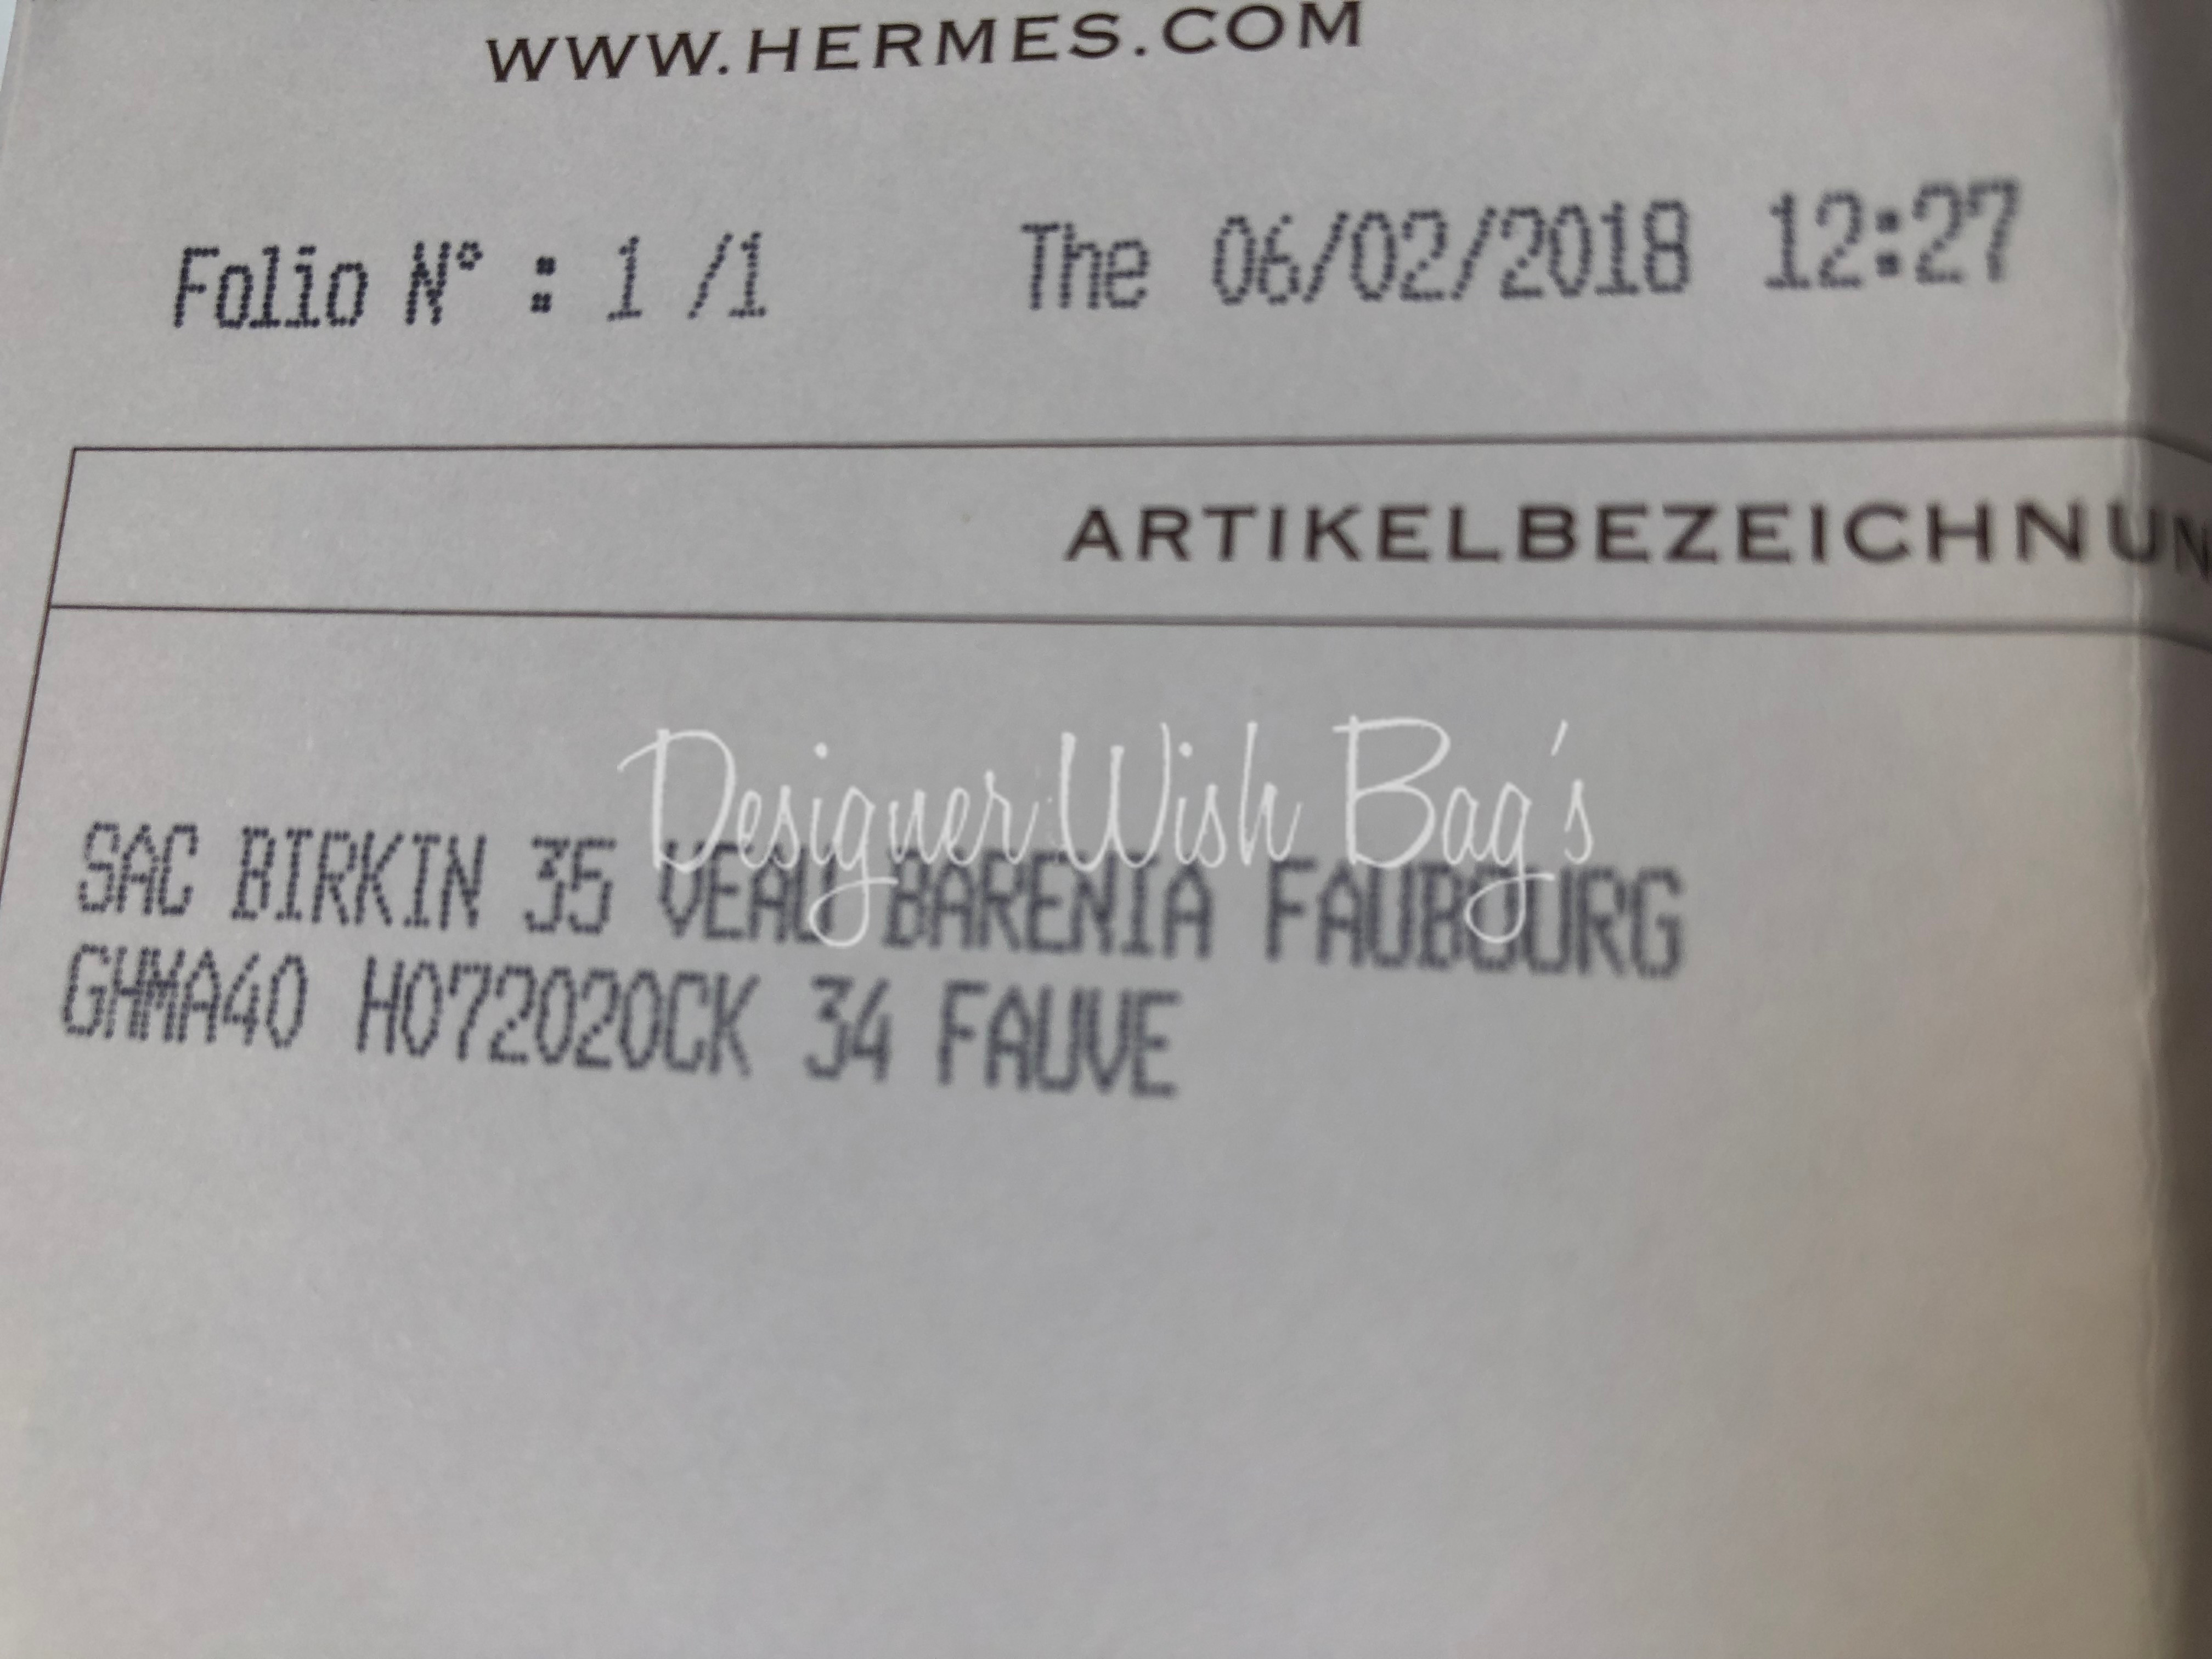 BRAND NEW Hermès Birkin 35 Barenia Faubourg